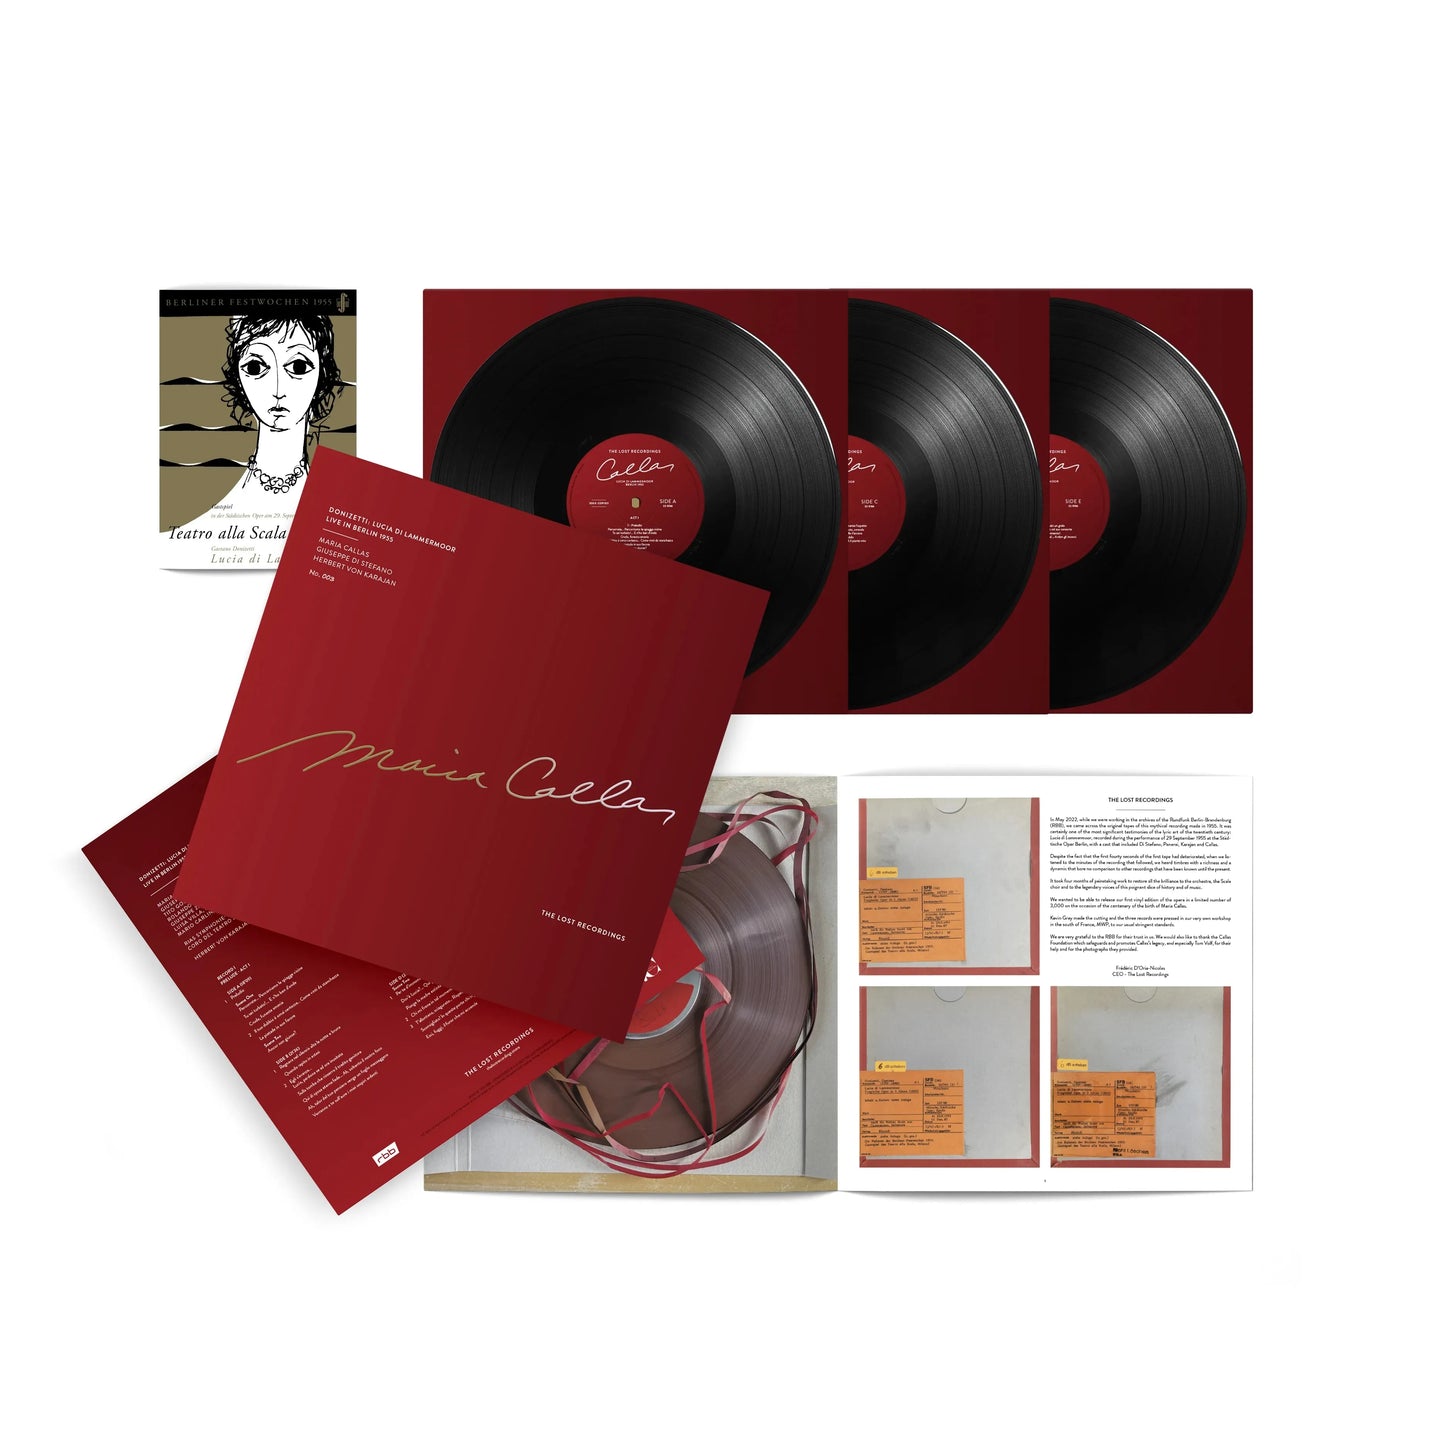 Maria Callas, von Karajan - Donizetti: Lucia Di Lammermoor - Berlin 1955 - The Lost Recordings Box Set LP